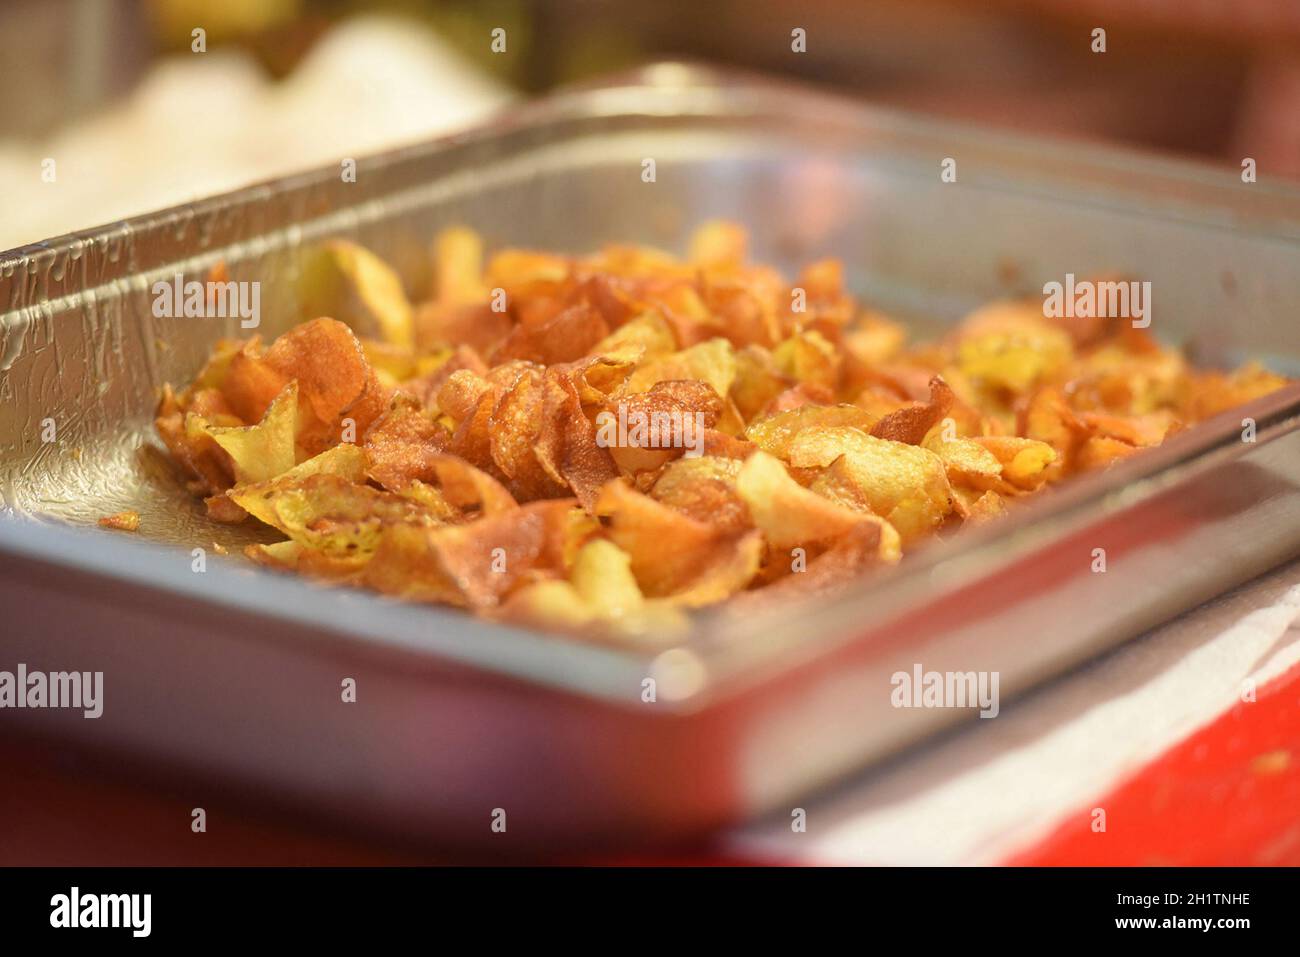 Herstellung von Kartoffel-Chips - fabricación de patatas fritas Foto de stock